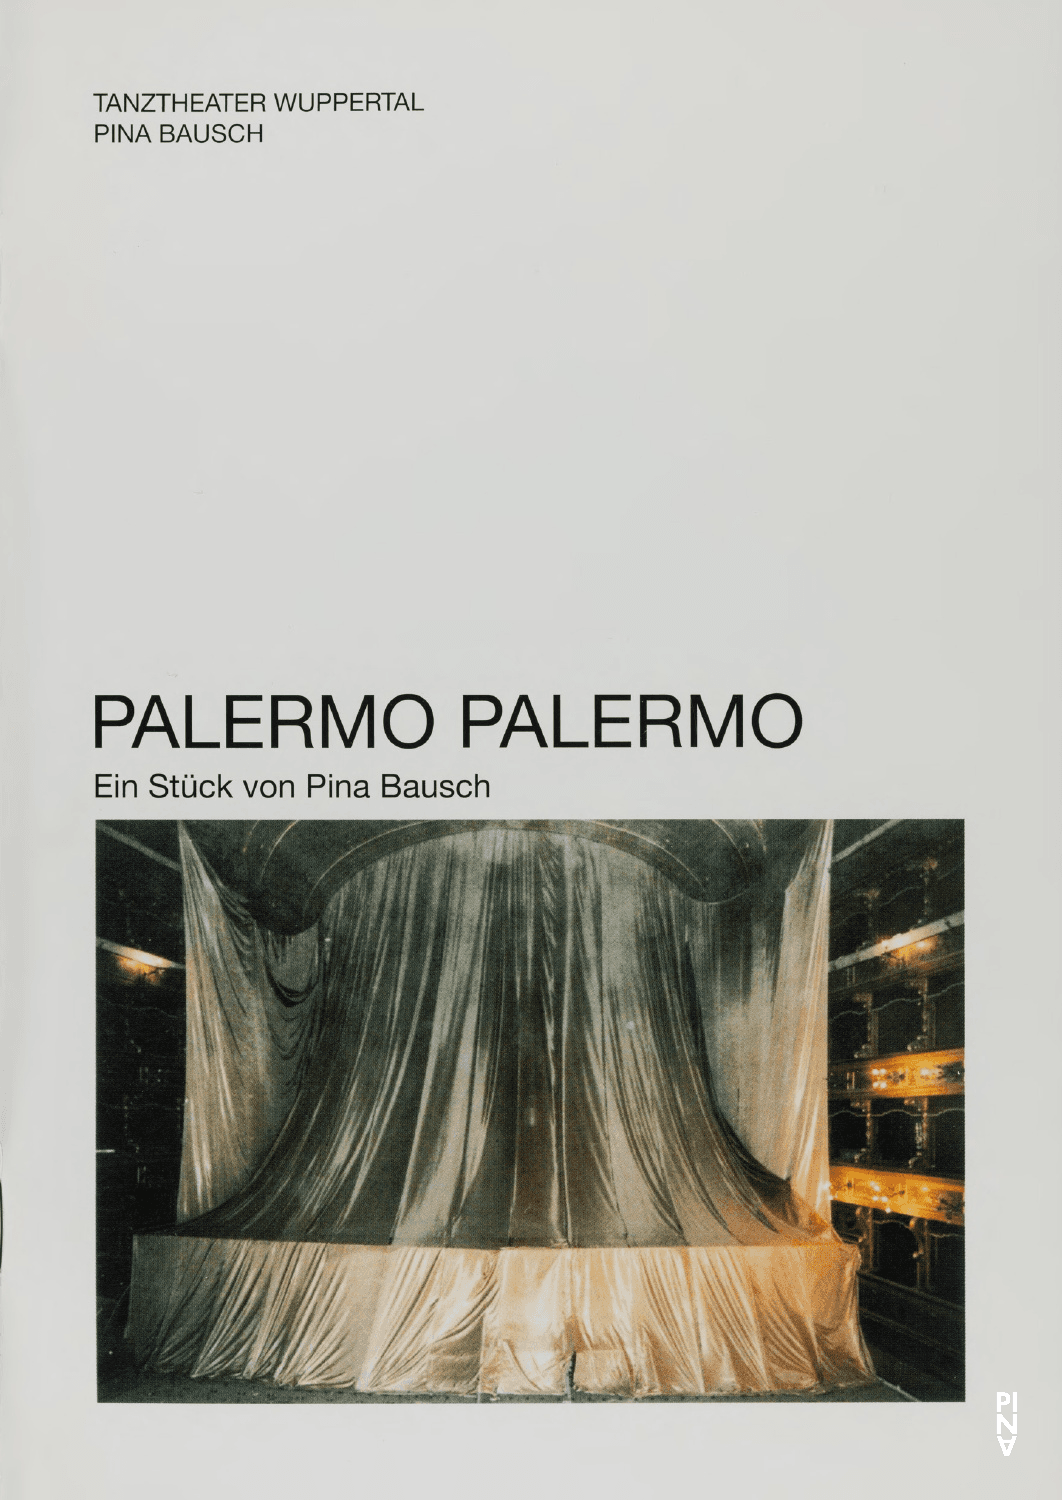 Programmheft zu „Palermo Palermo“ von Pina Bausch mit Tanztheater Wuppertal in Wuppertal, 12.01.2011–16.01.2011